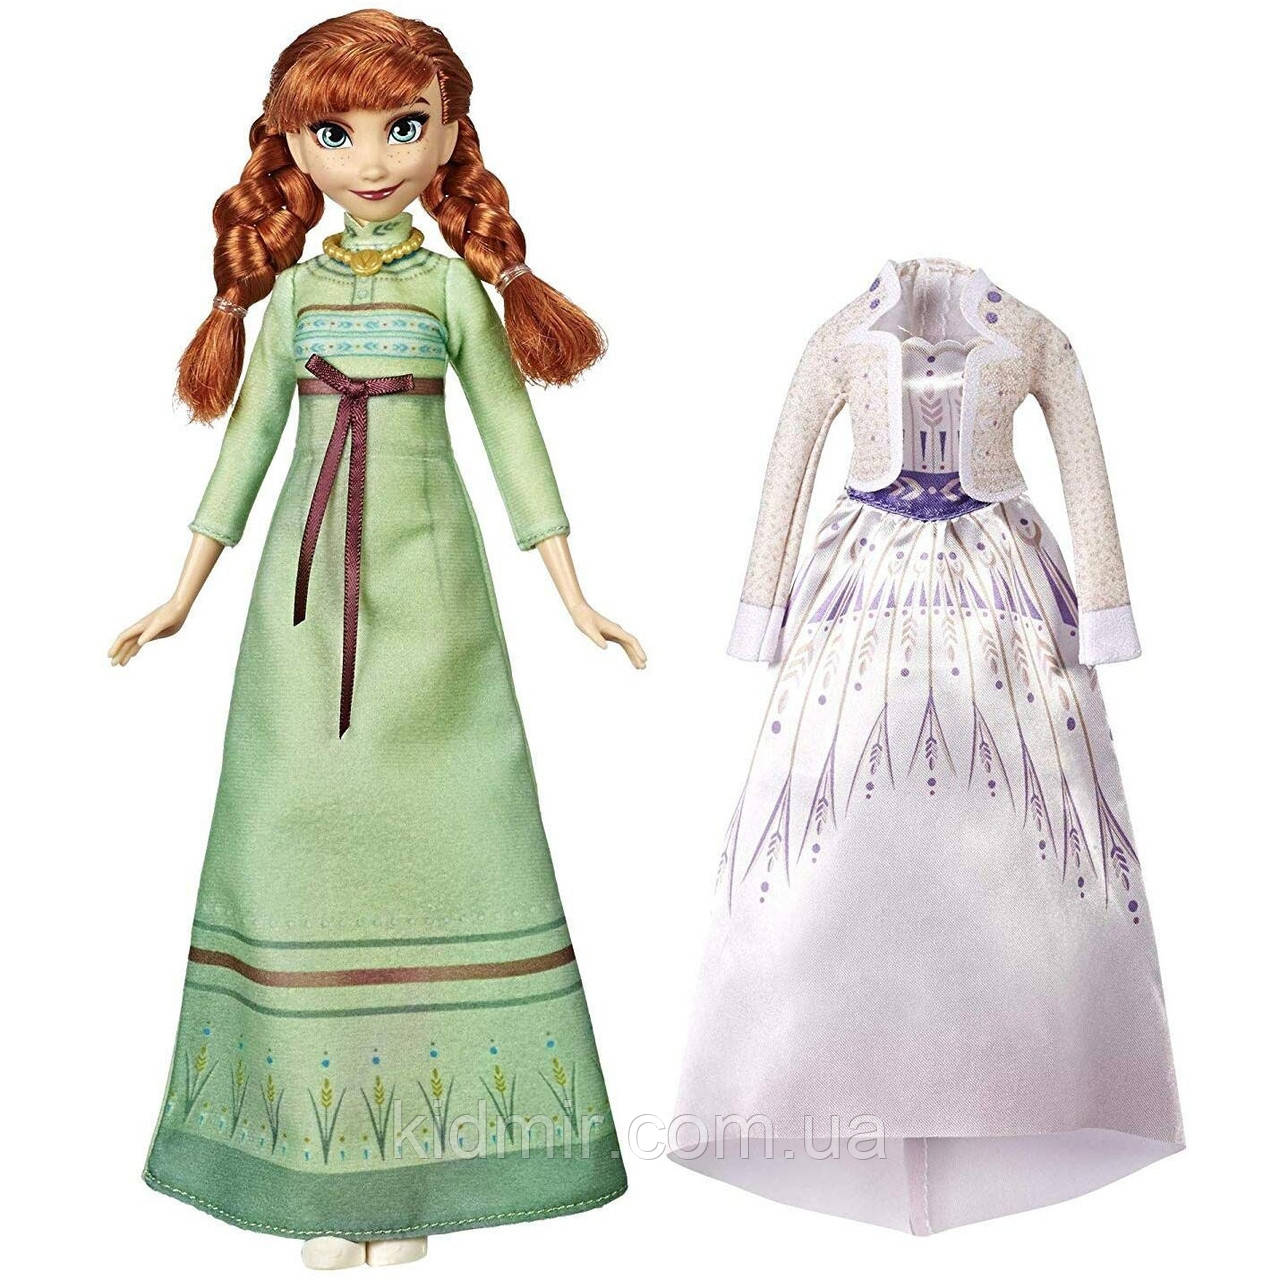 Лялька Анна з набором одягу Disney Princess Анна Hasbro E6908